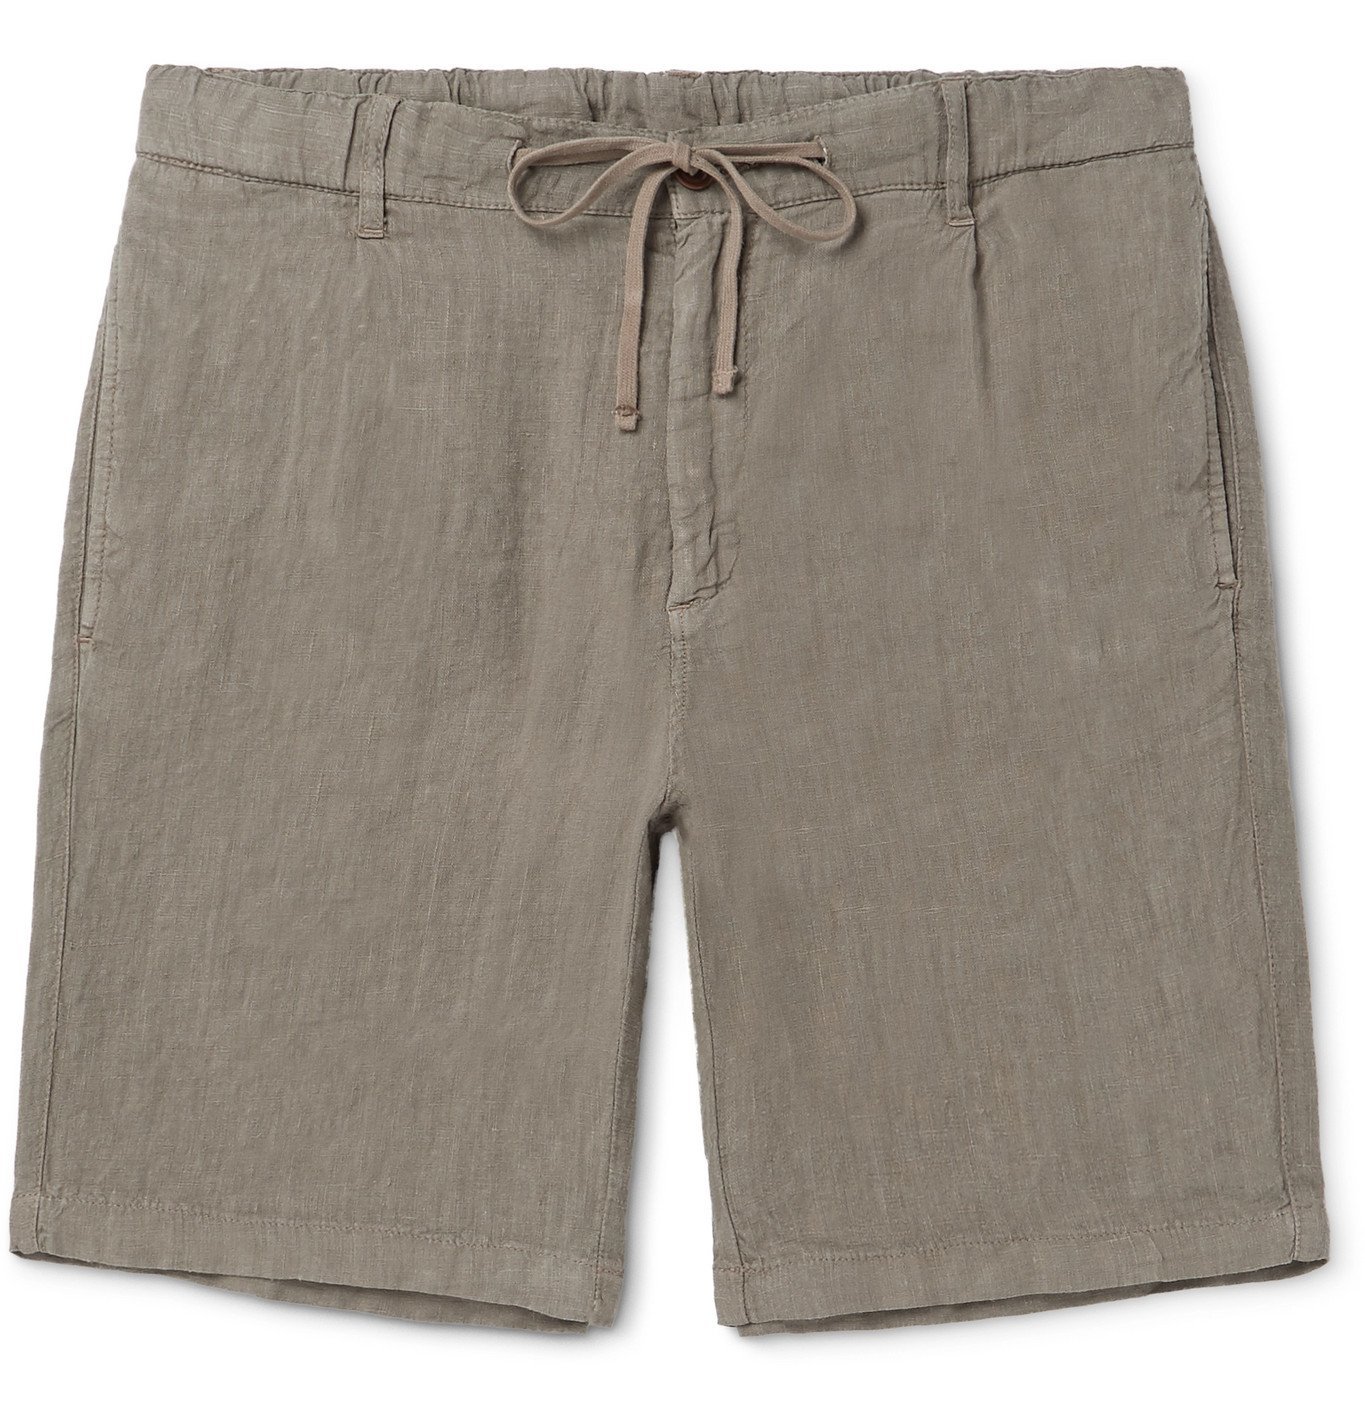 Hartford - Pleated Linen Drawstring Shorts - Green Hartford